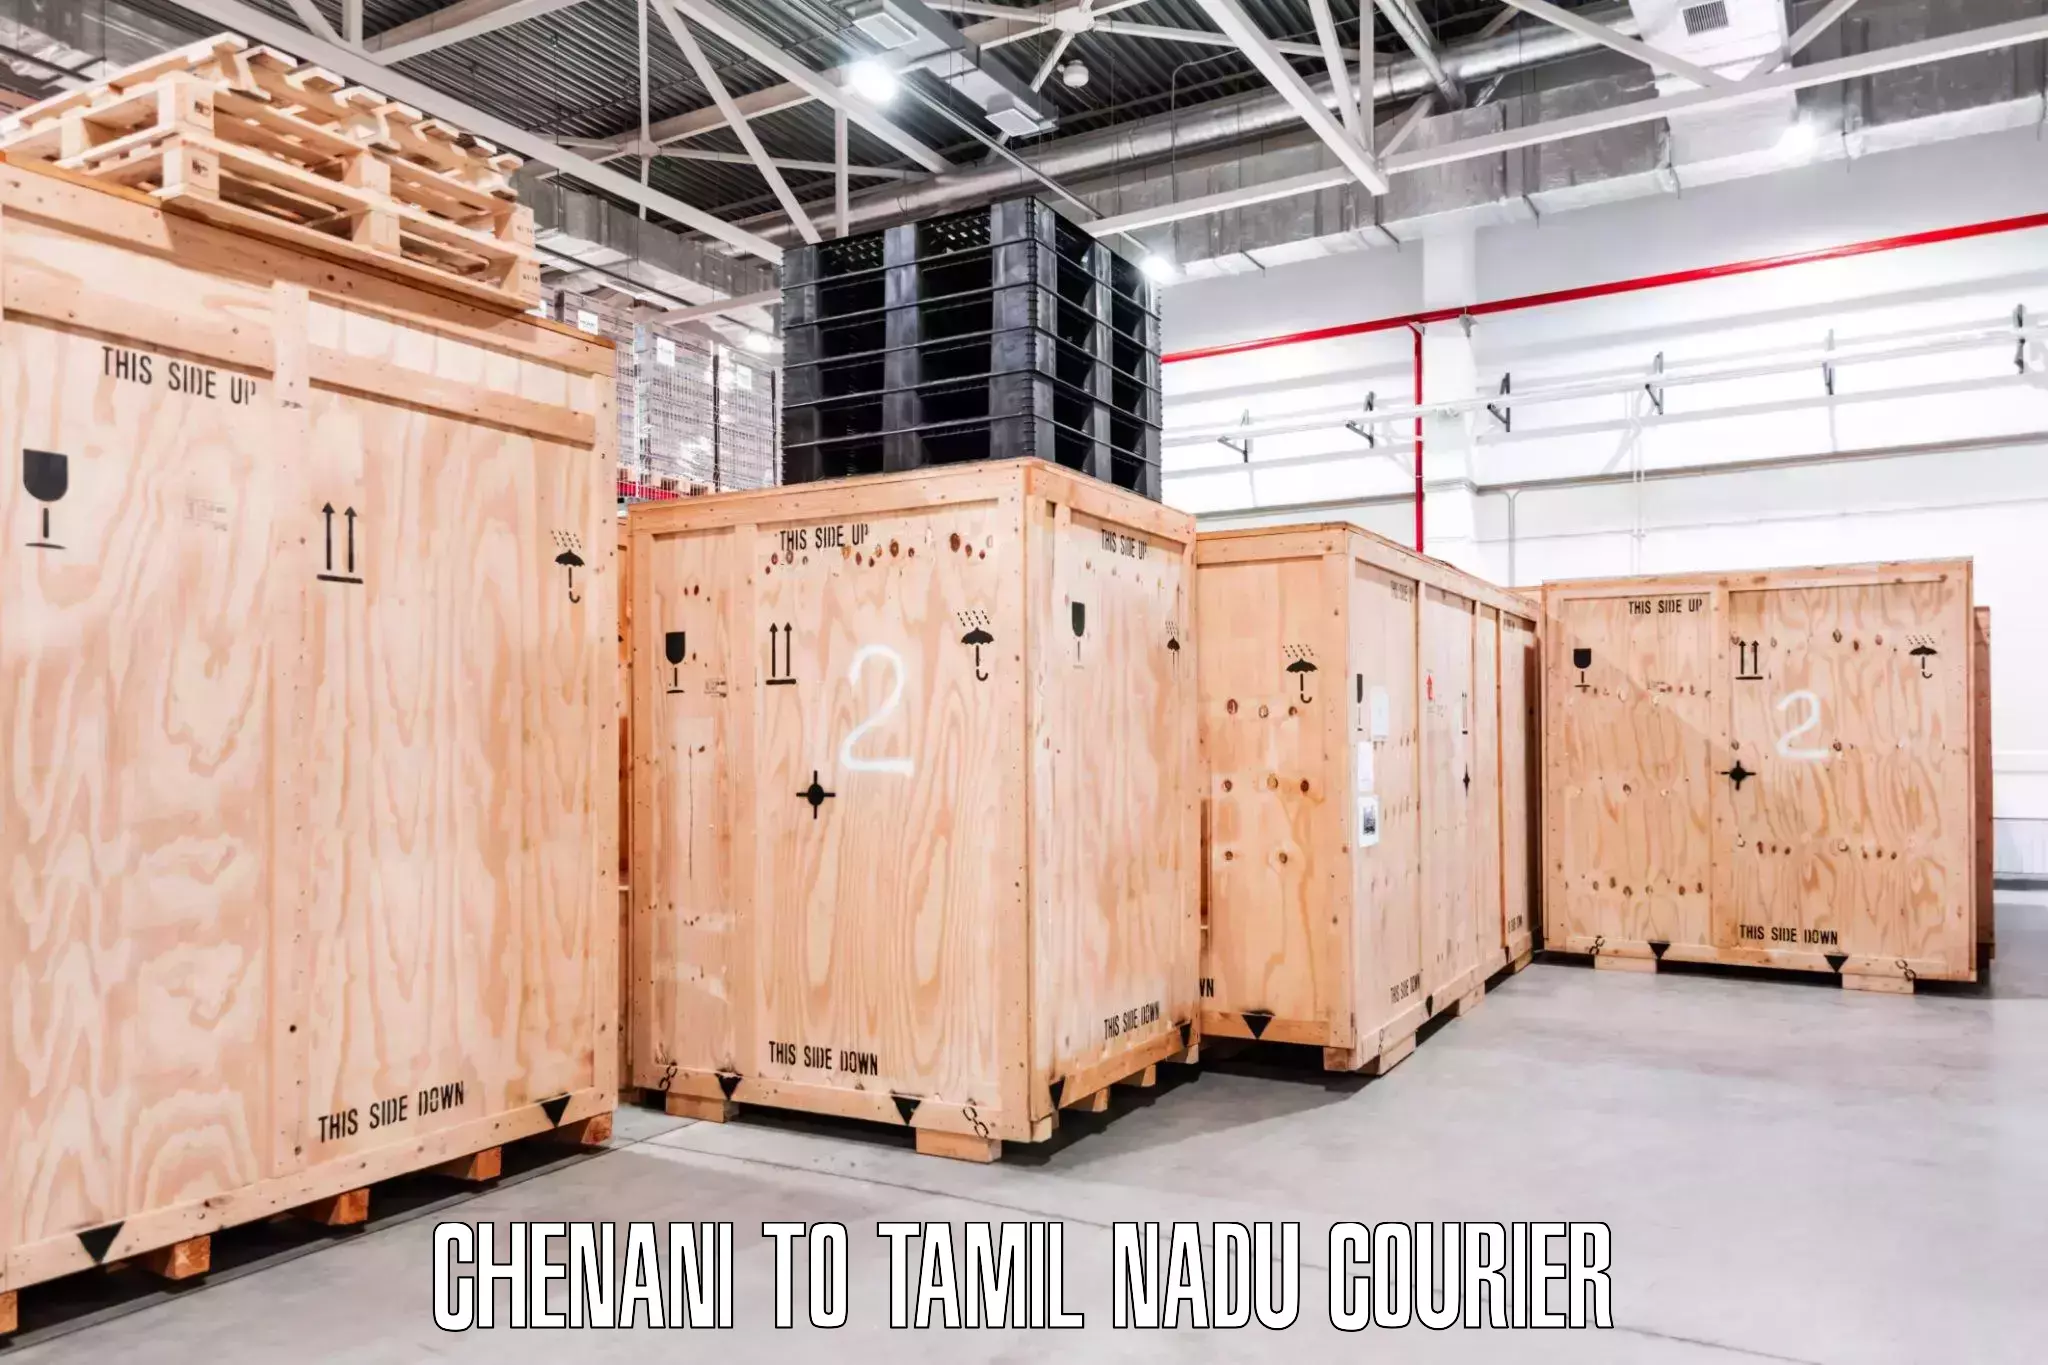 Furniture transport and logistics Chenani to Tamil Nadu